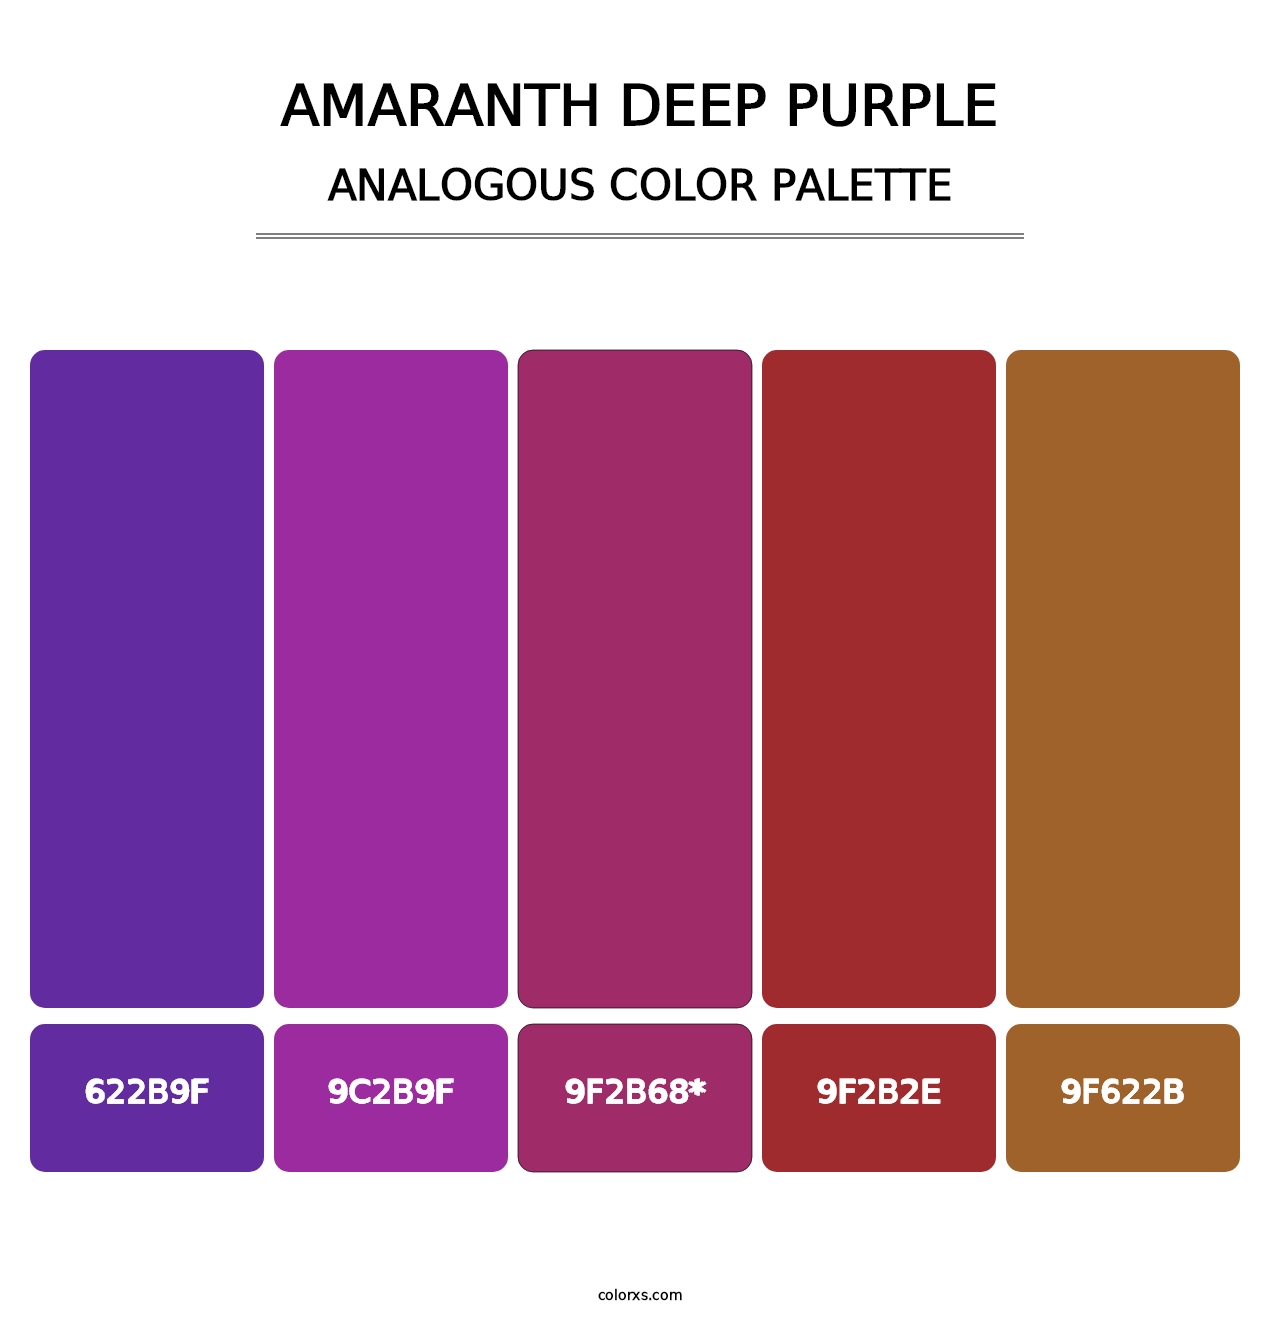 Amaranth Deep Purple - Analogous Color Palette